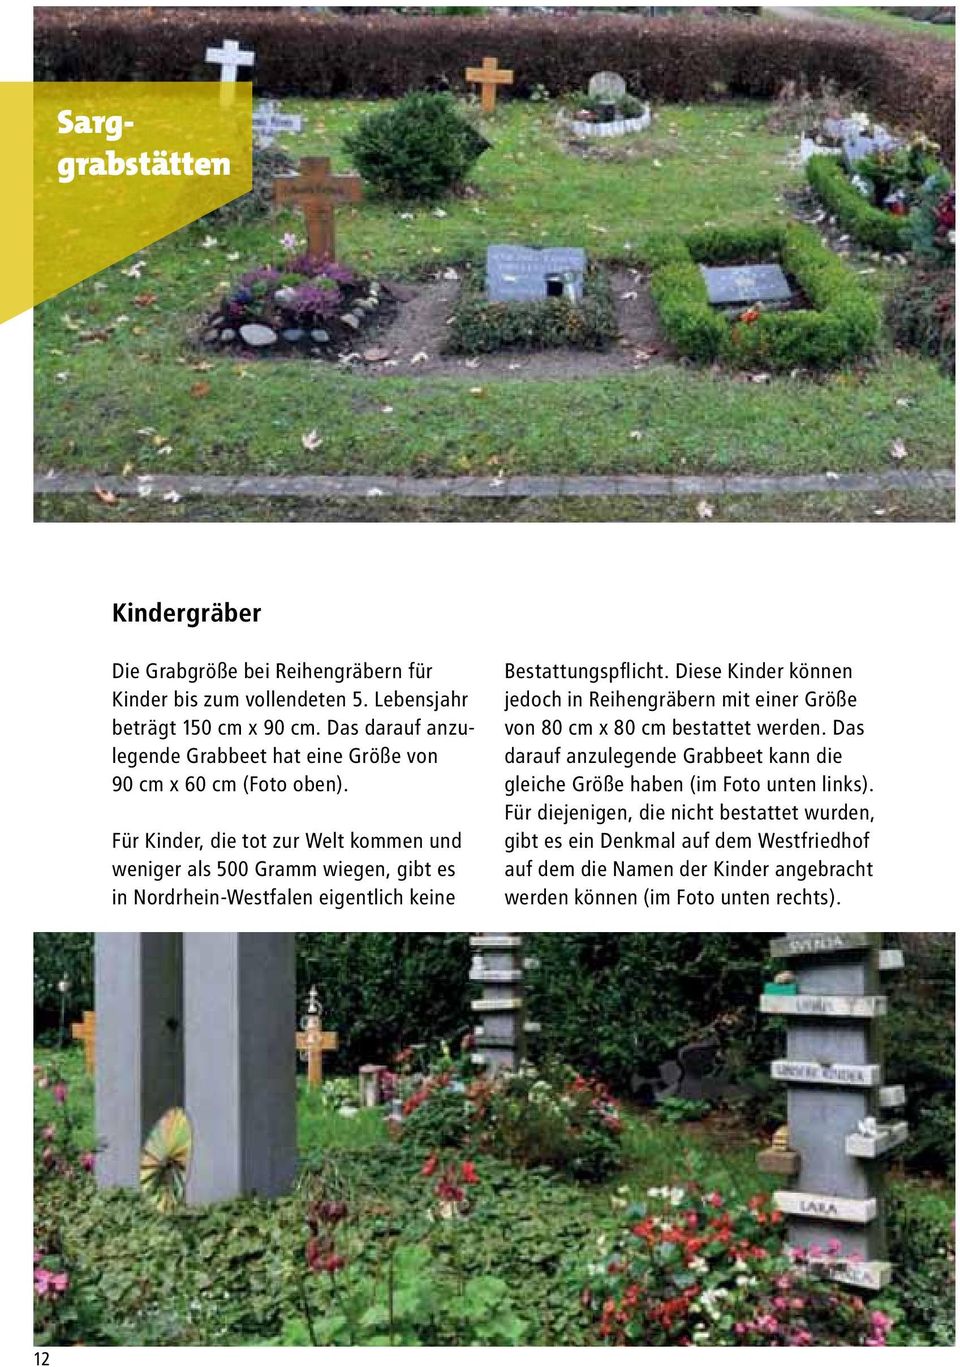 Für Kinder, die tot zur Welt kommen und weniger als 500 Gramm wiegen, gibt es in Nordrhein-Westfalen eigentlich keine Bestattungspflicht.